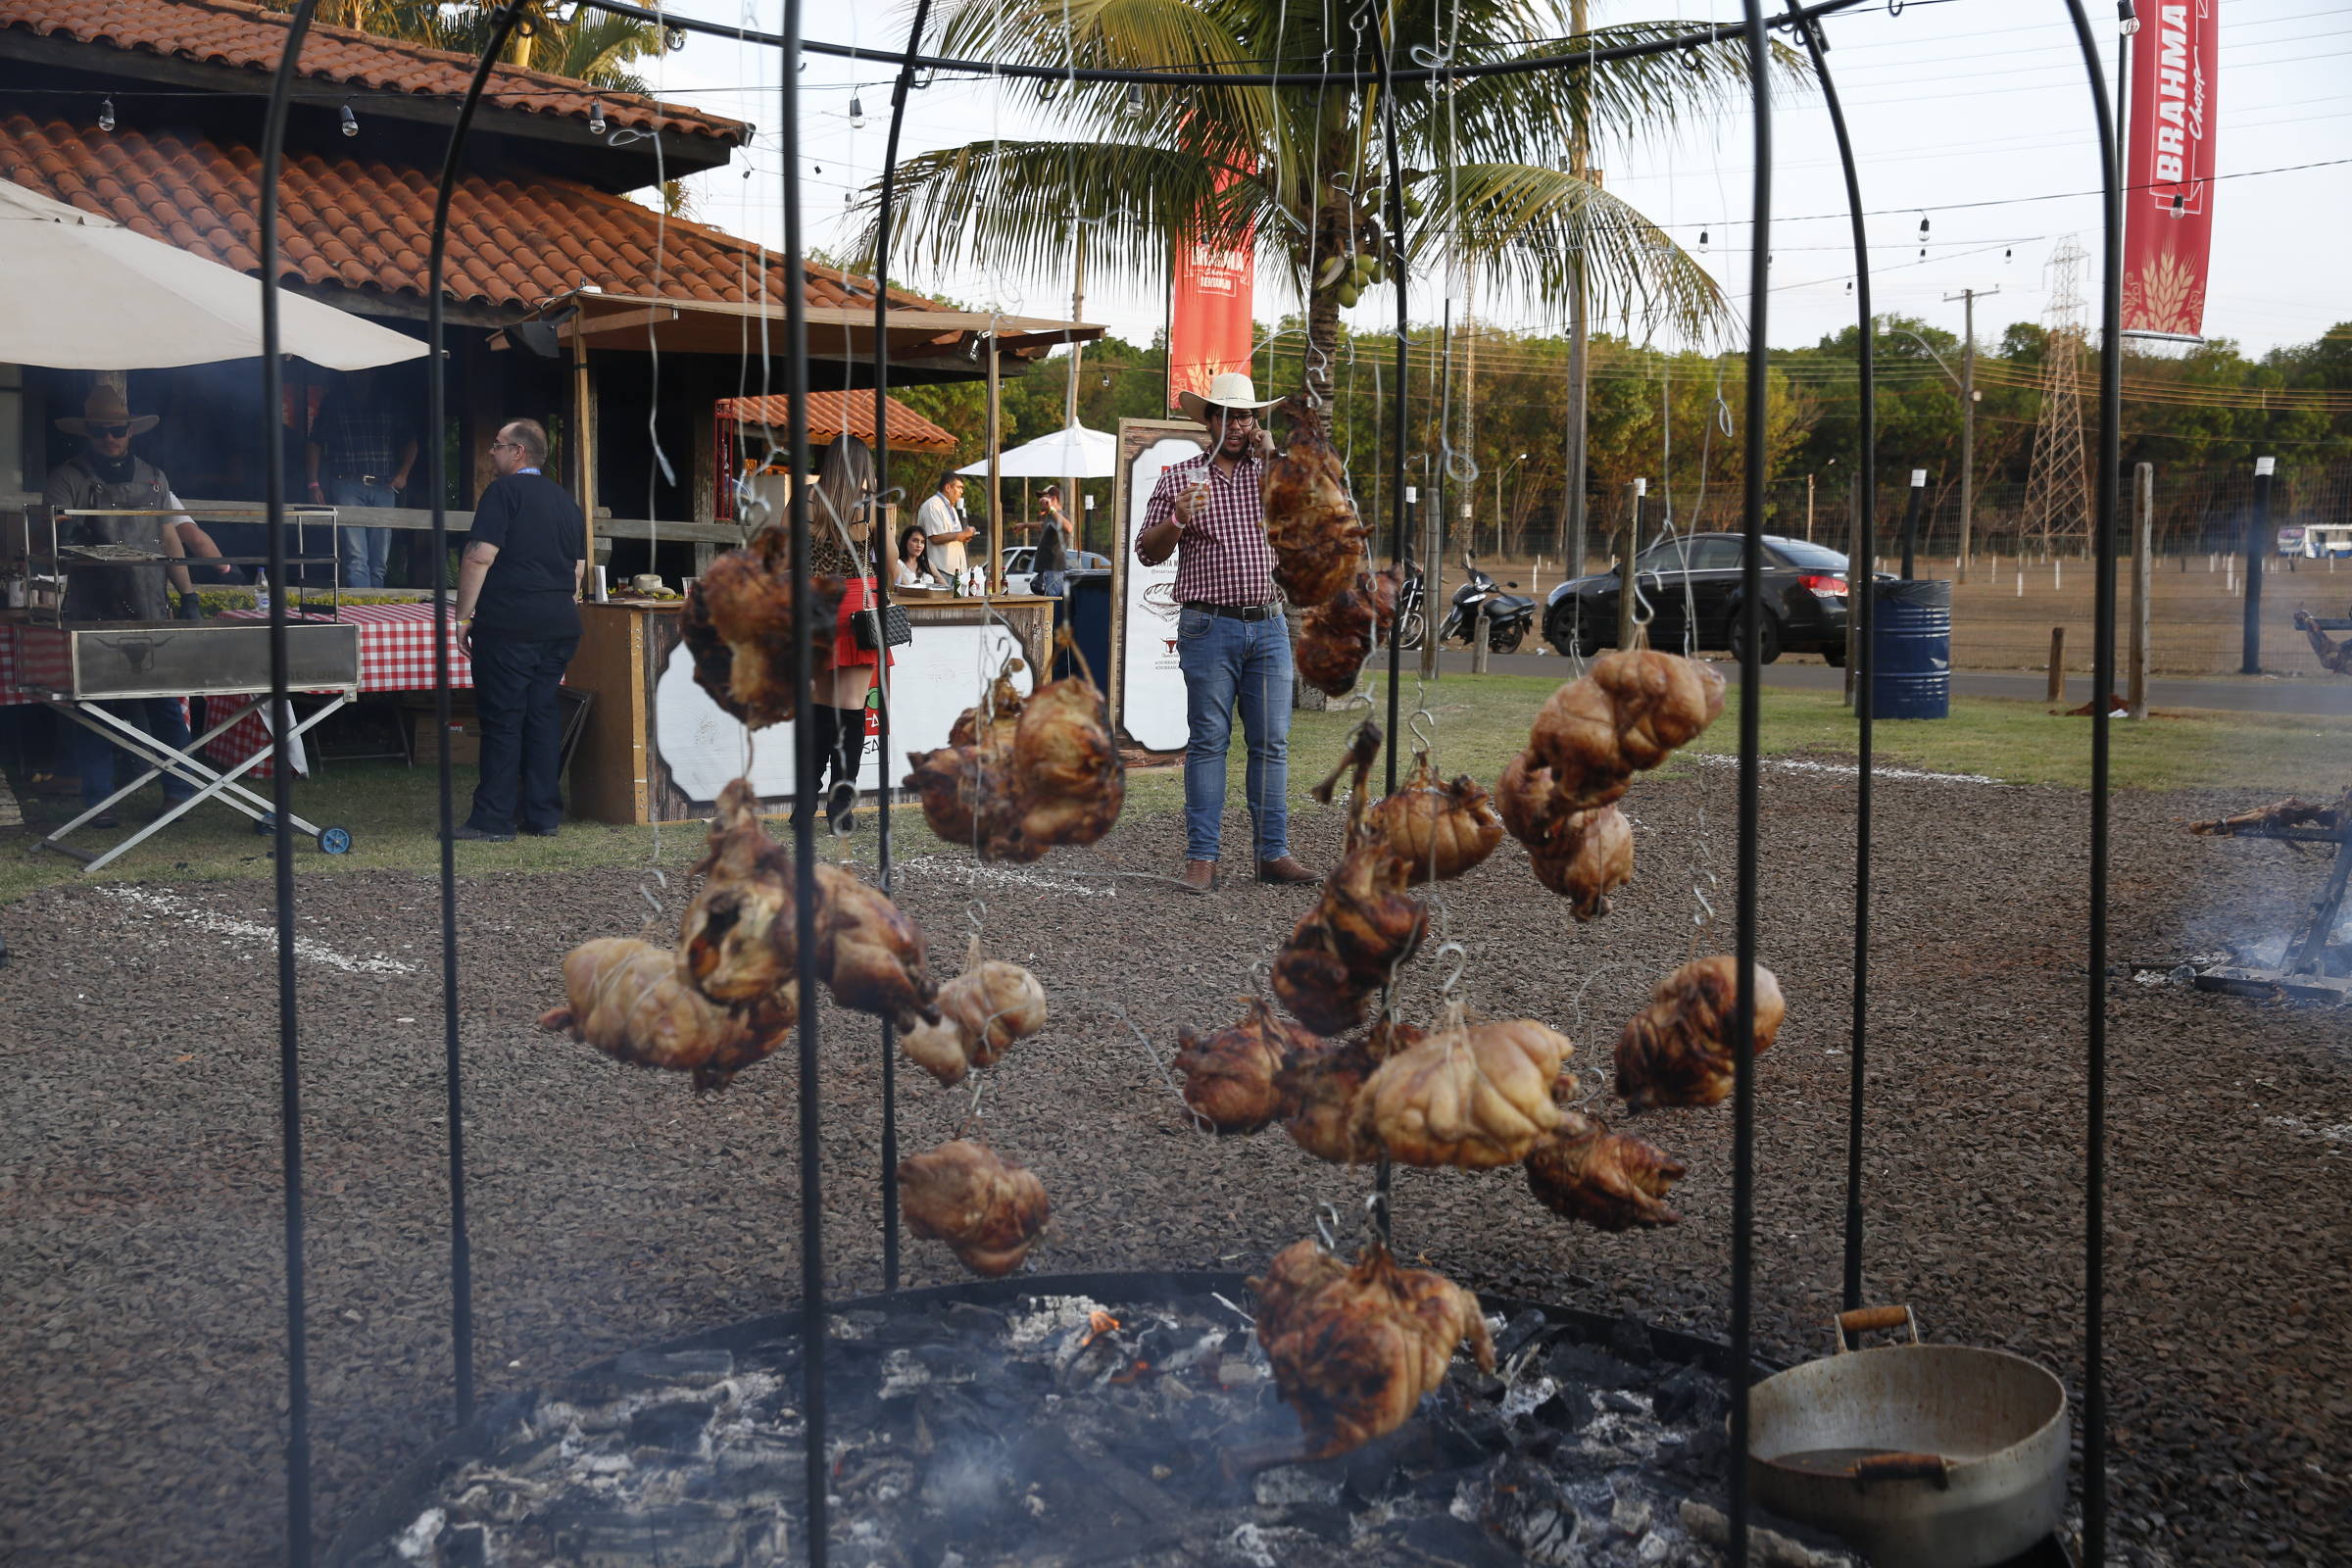 4ª Festa do Peão de Boiadeiro acontece neste fim de semana em Castro